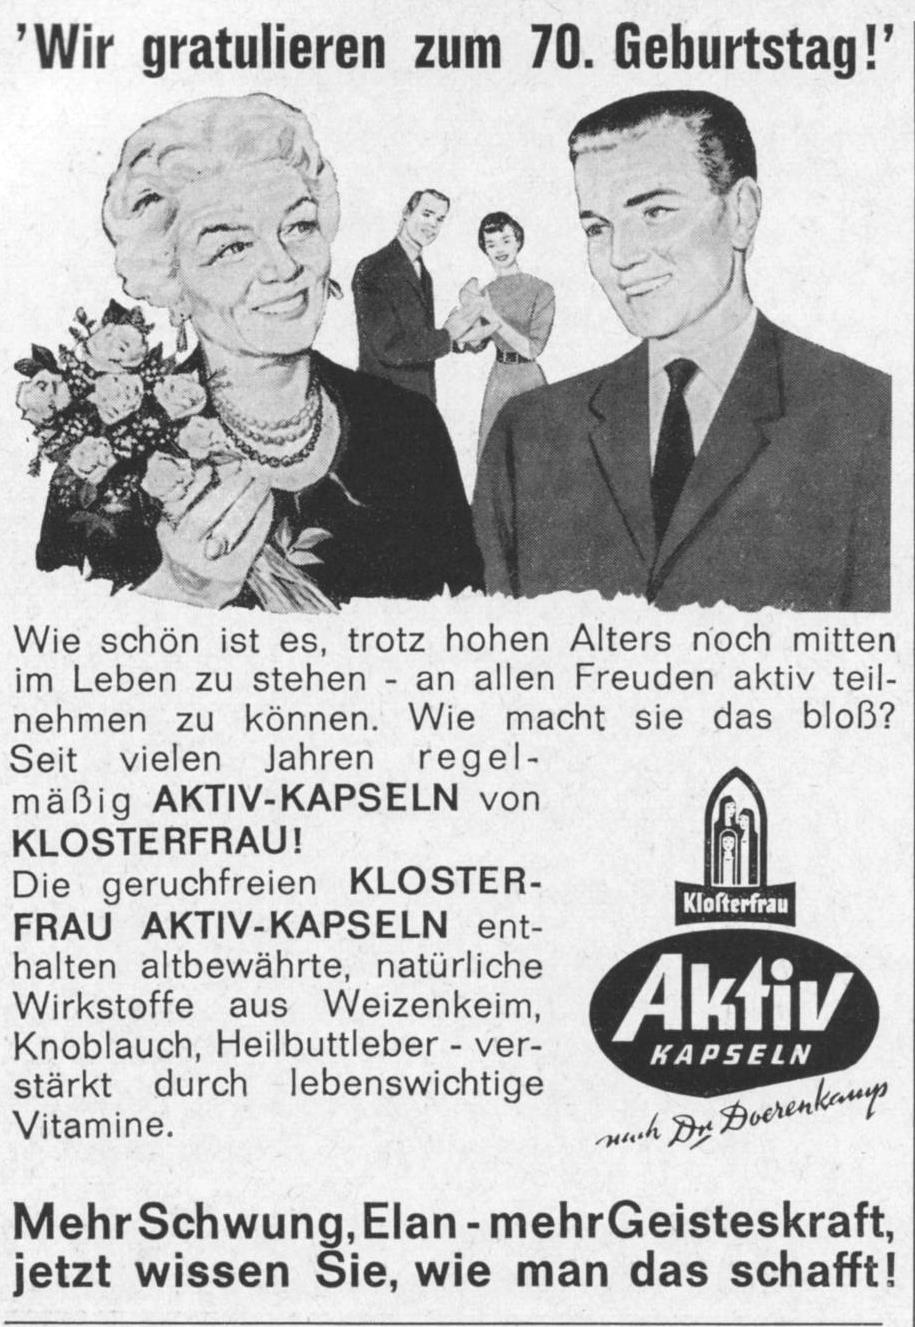 Kloserfrau 1962.jpg